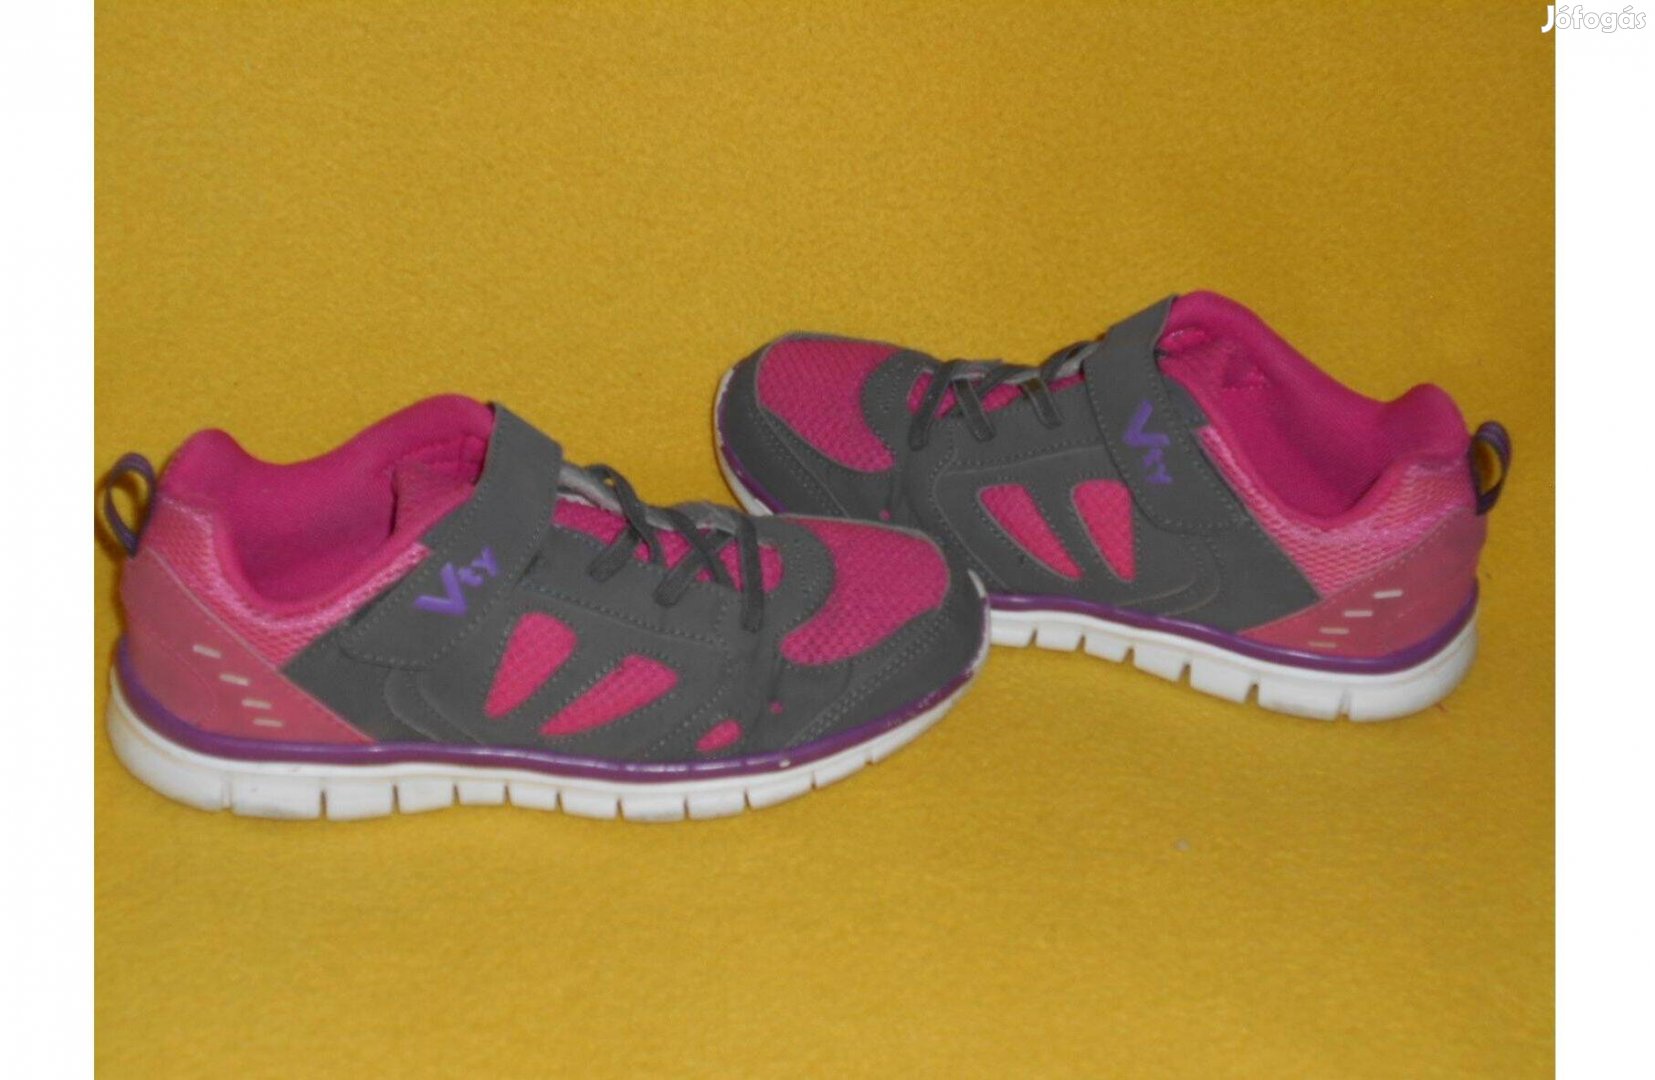 Kislány cipő, 34 - es, vagány: pink- szürke. Vty márka- féláron